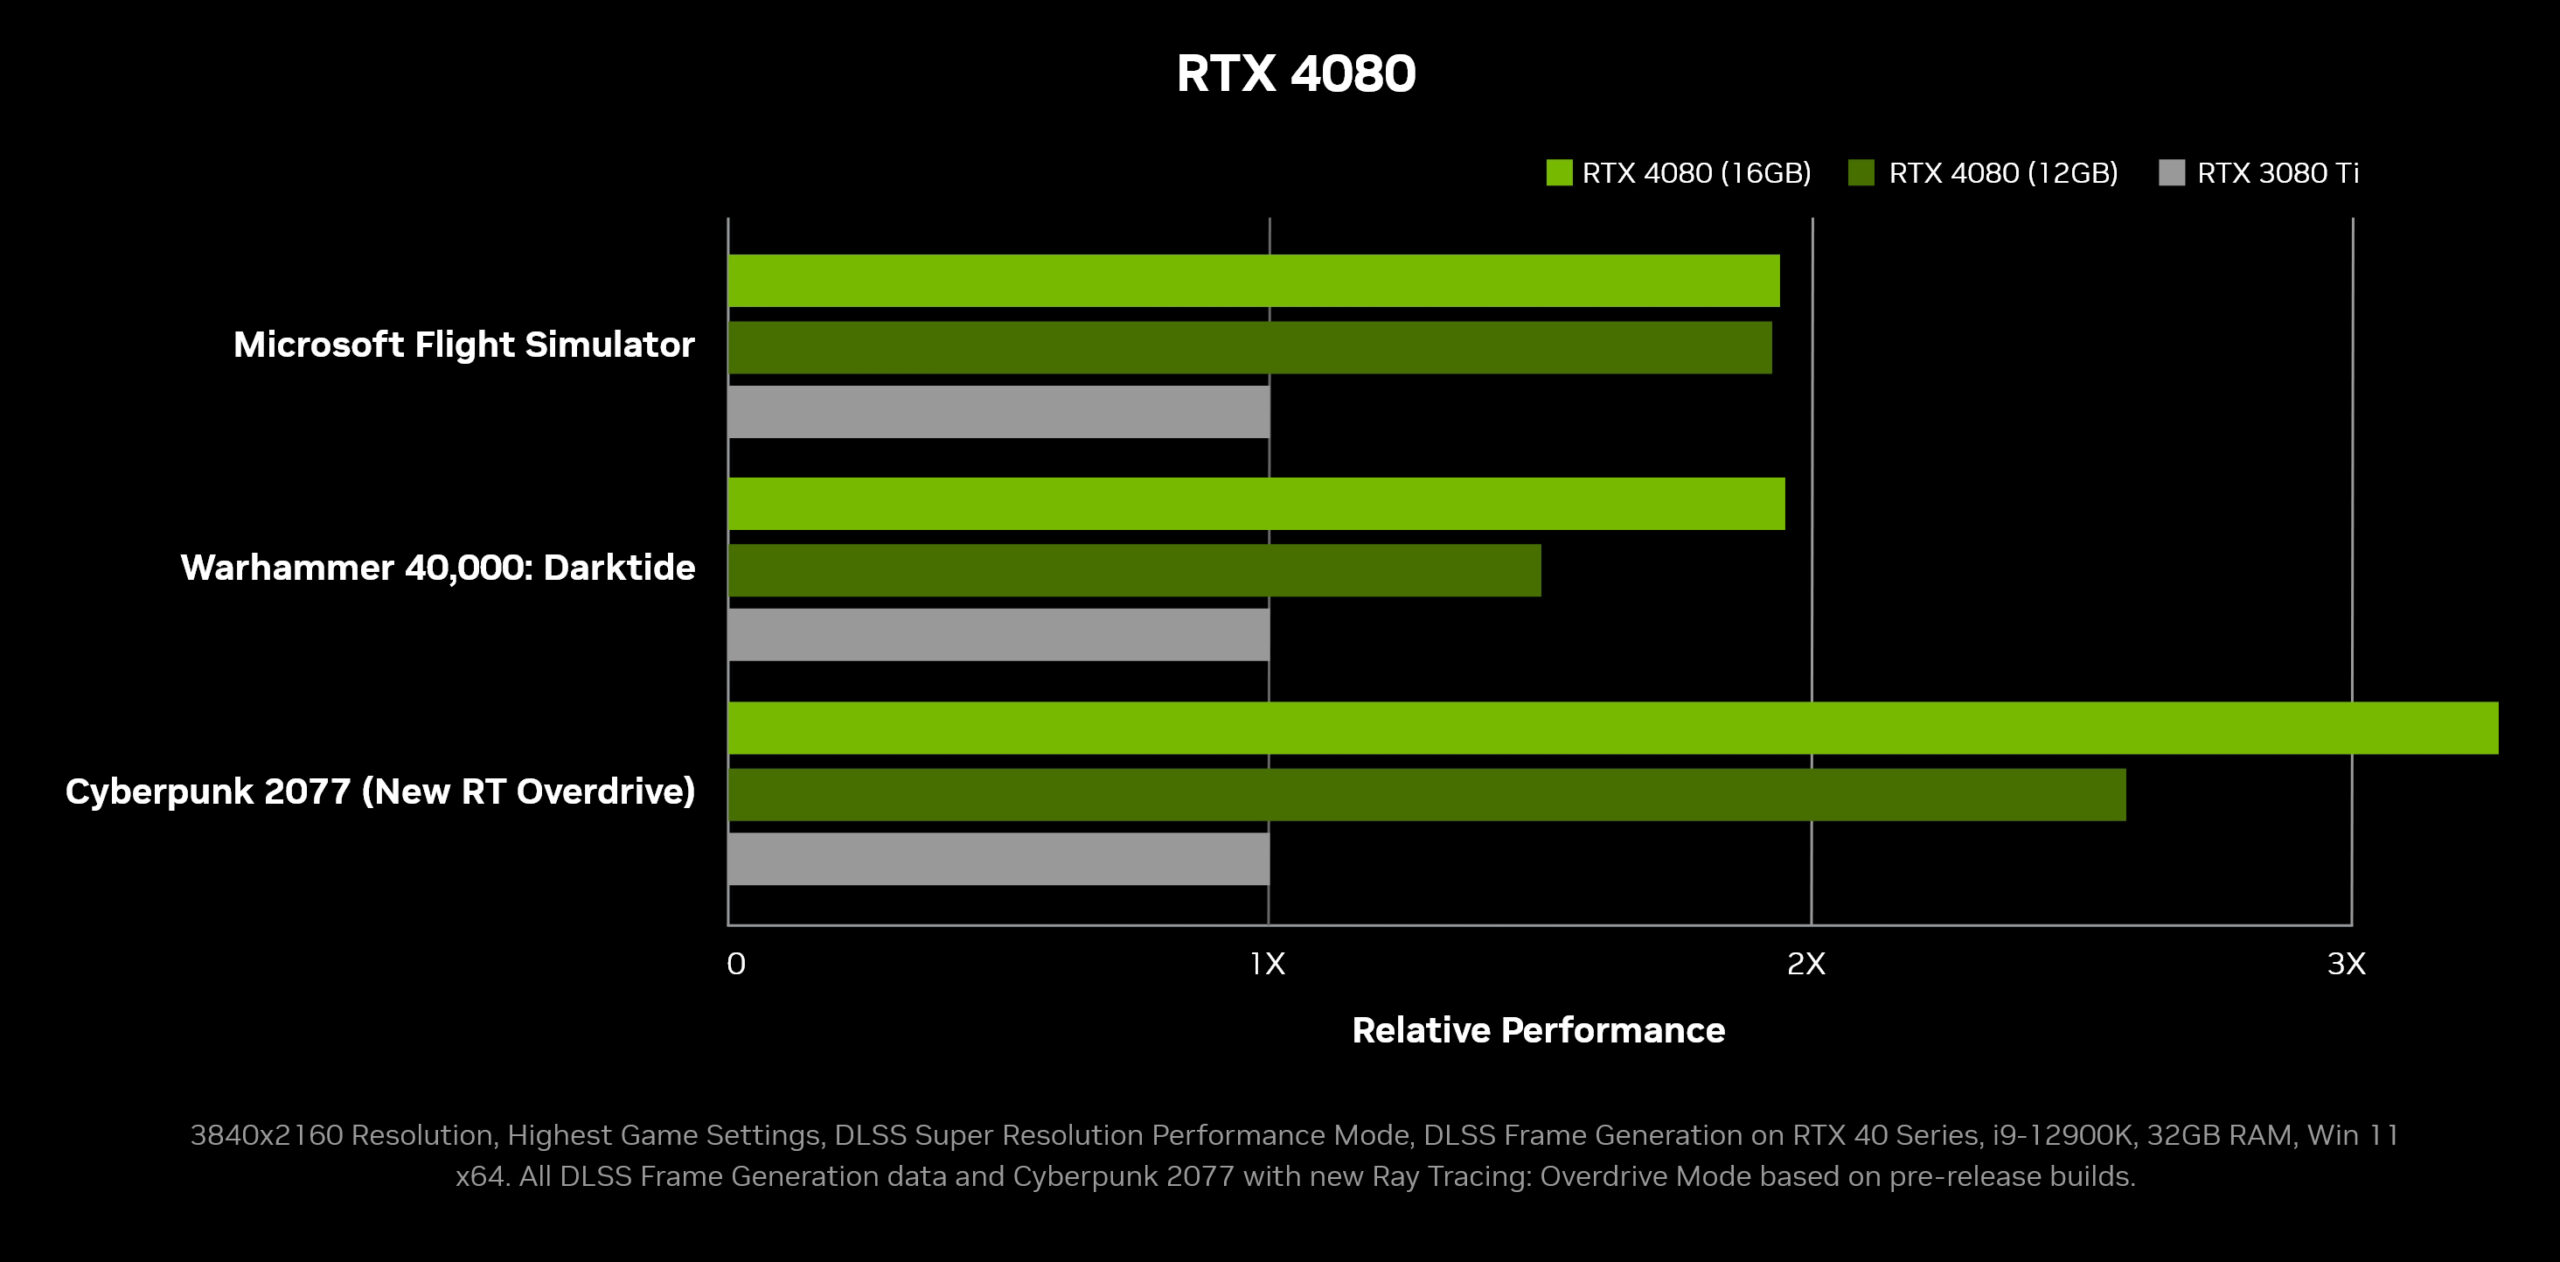 Hiệu năng của RTX 4070Ti (RTX 4080 12GB) khi so sánh với RTX 3090 và RTX 4080